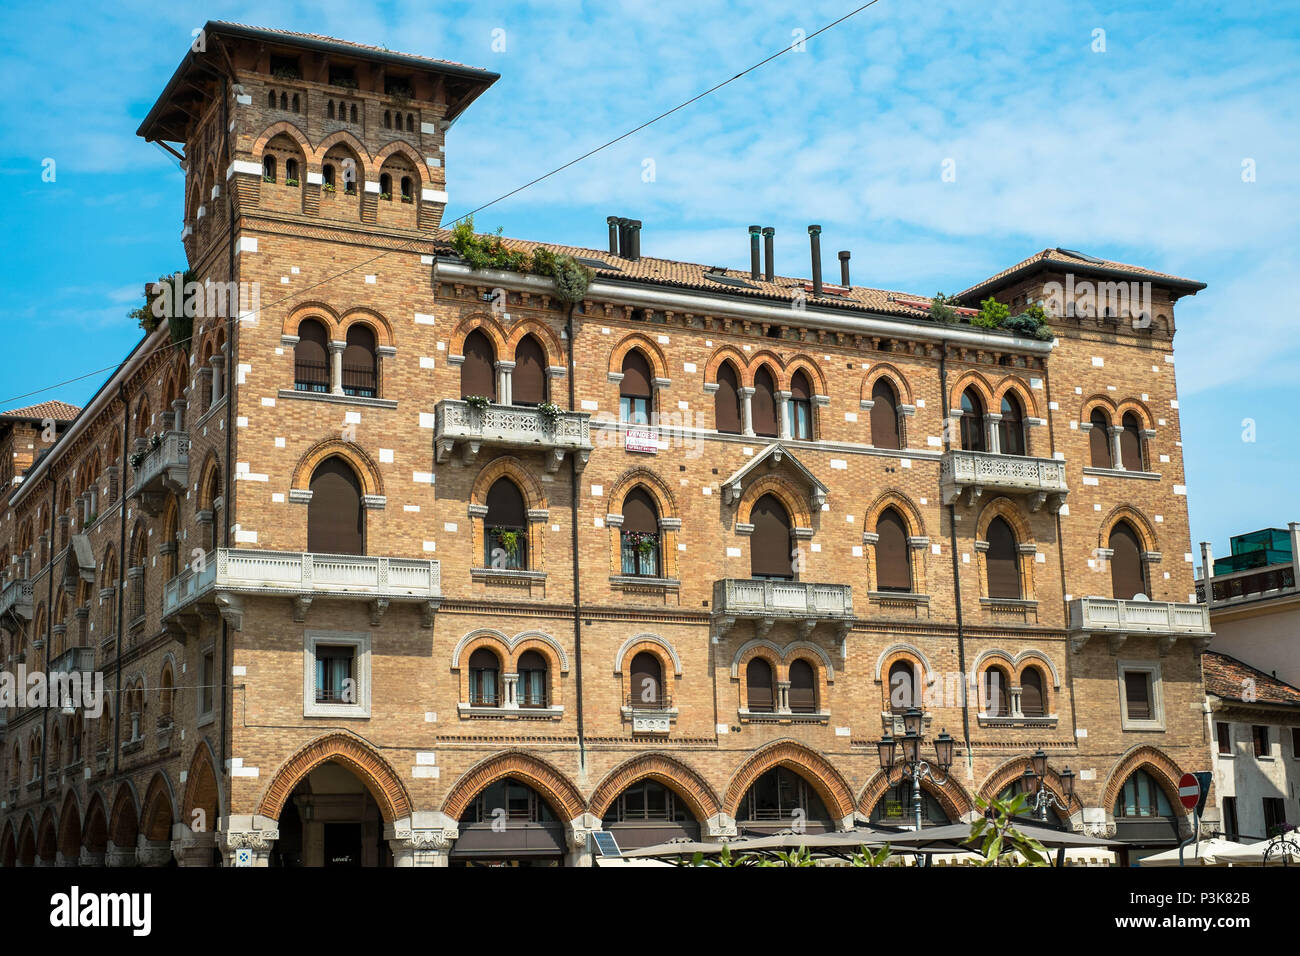 Un viejo y enorme edificio en el centro de la ciudad de Treviso se encuentra en una plaza. Tiene muchos arcos y ventanas. Foto de stock